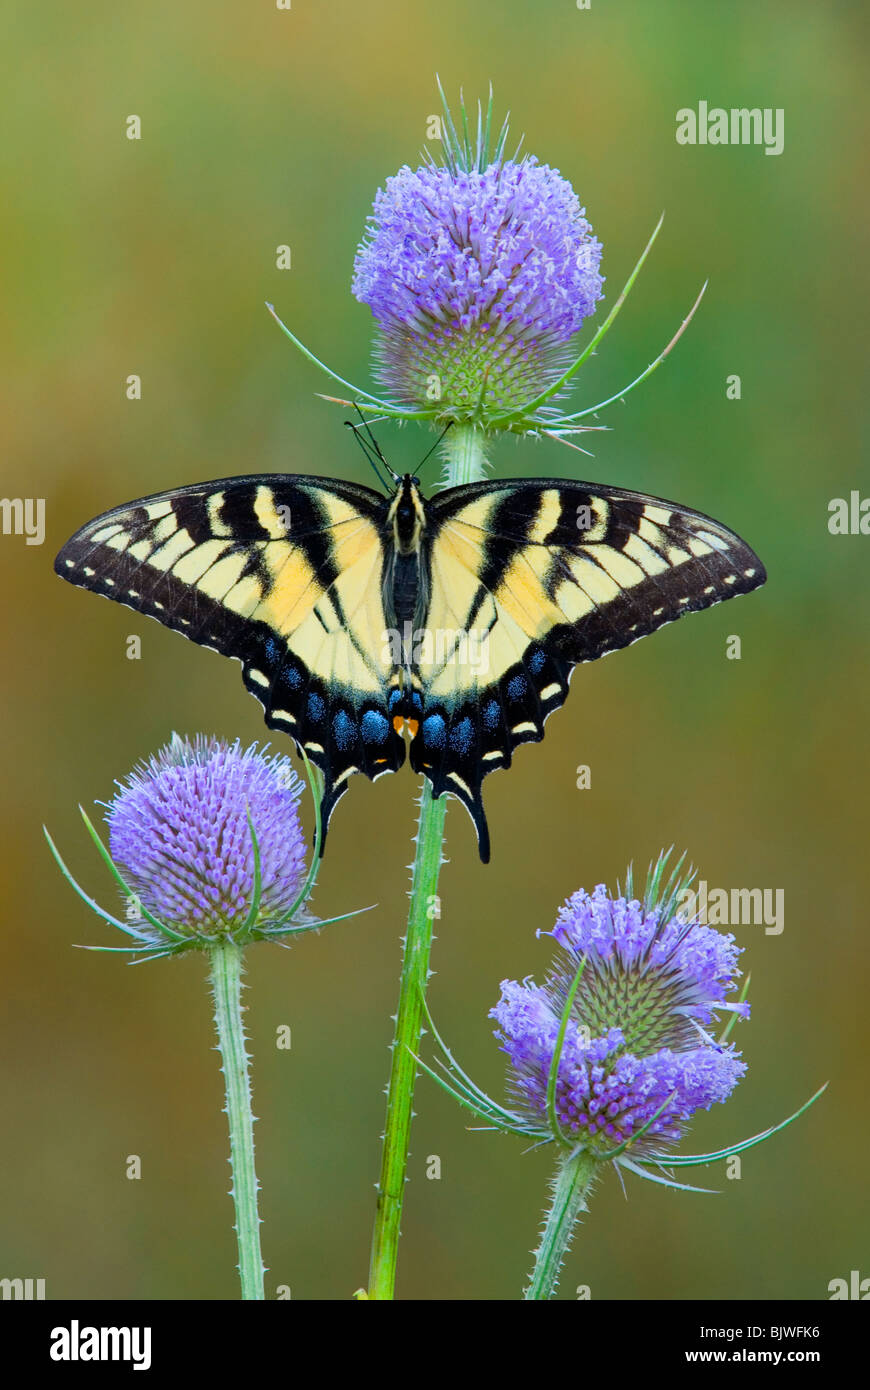 Eastern Tiger Swallowtail Butterfly Papilio glaucus sur Cardère Est des Etats-Unis, par aller Moody/Dembinsky Assoc Photo Banque D'Images